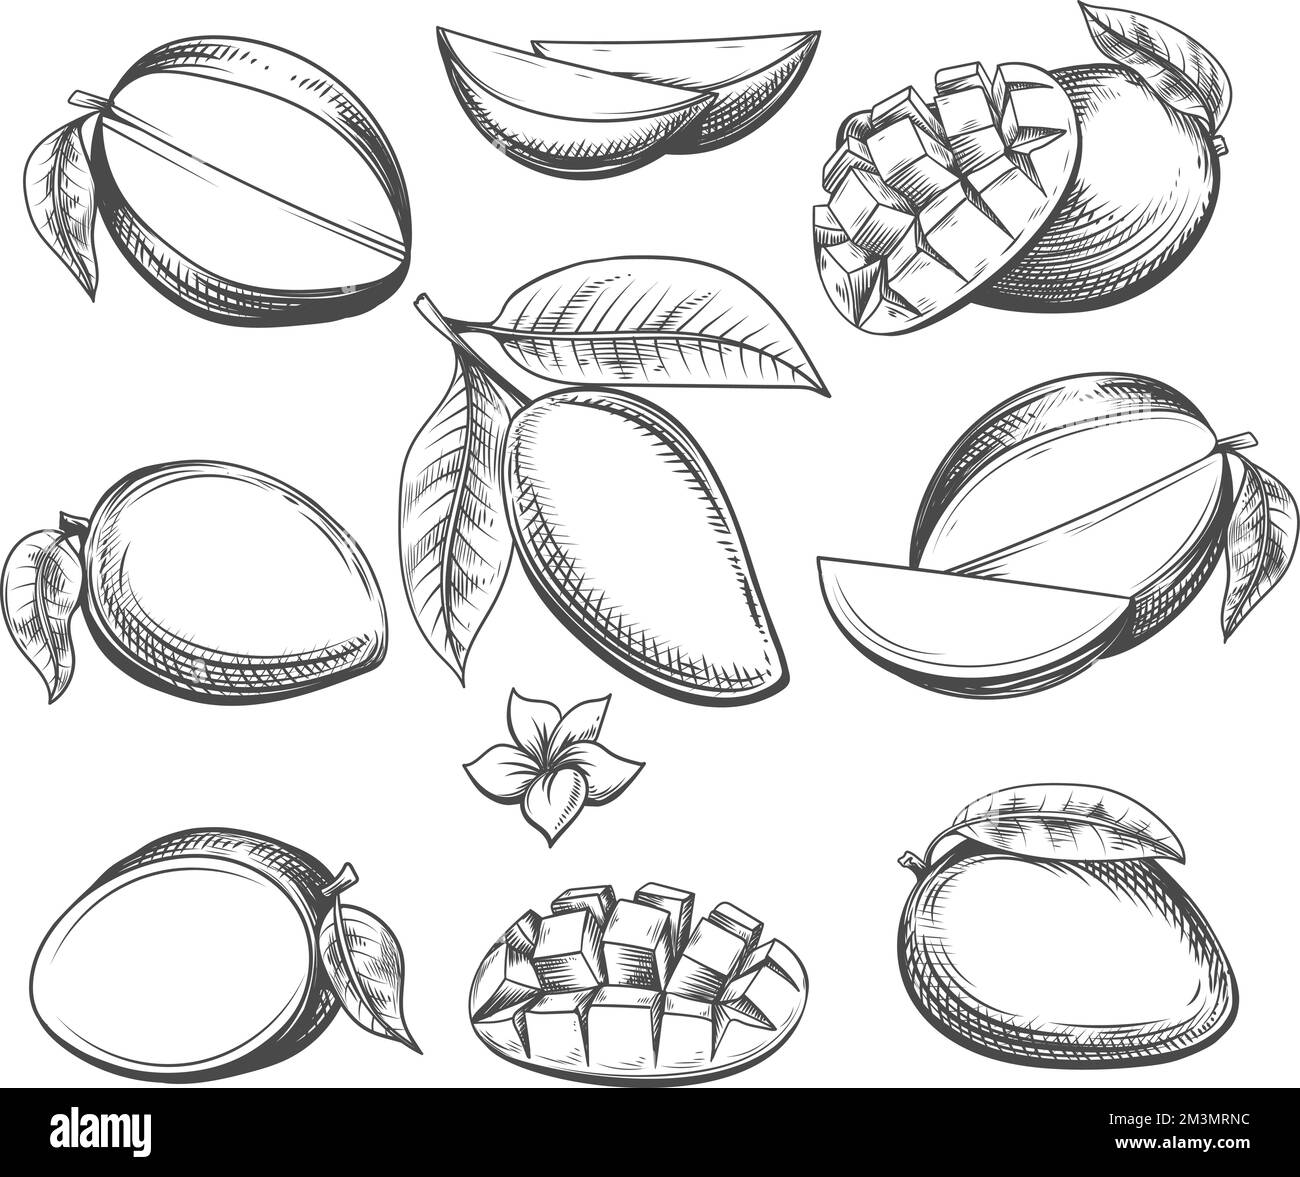 Mango fruits Black and White Stock Photos & Images - Alamy